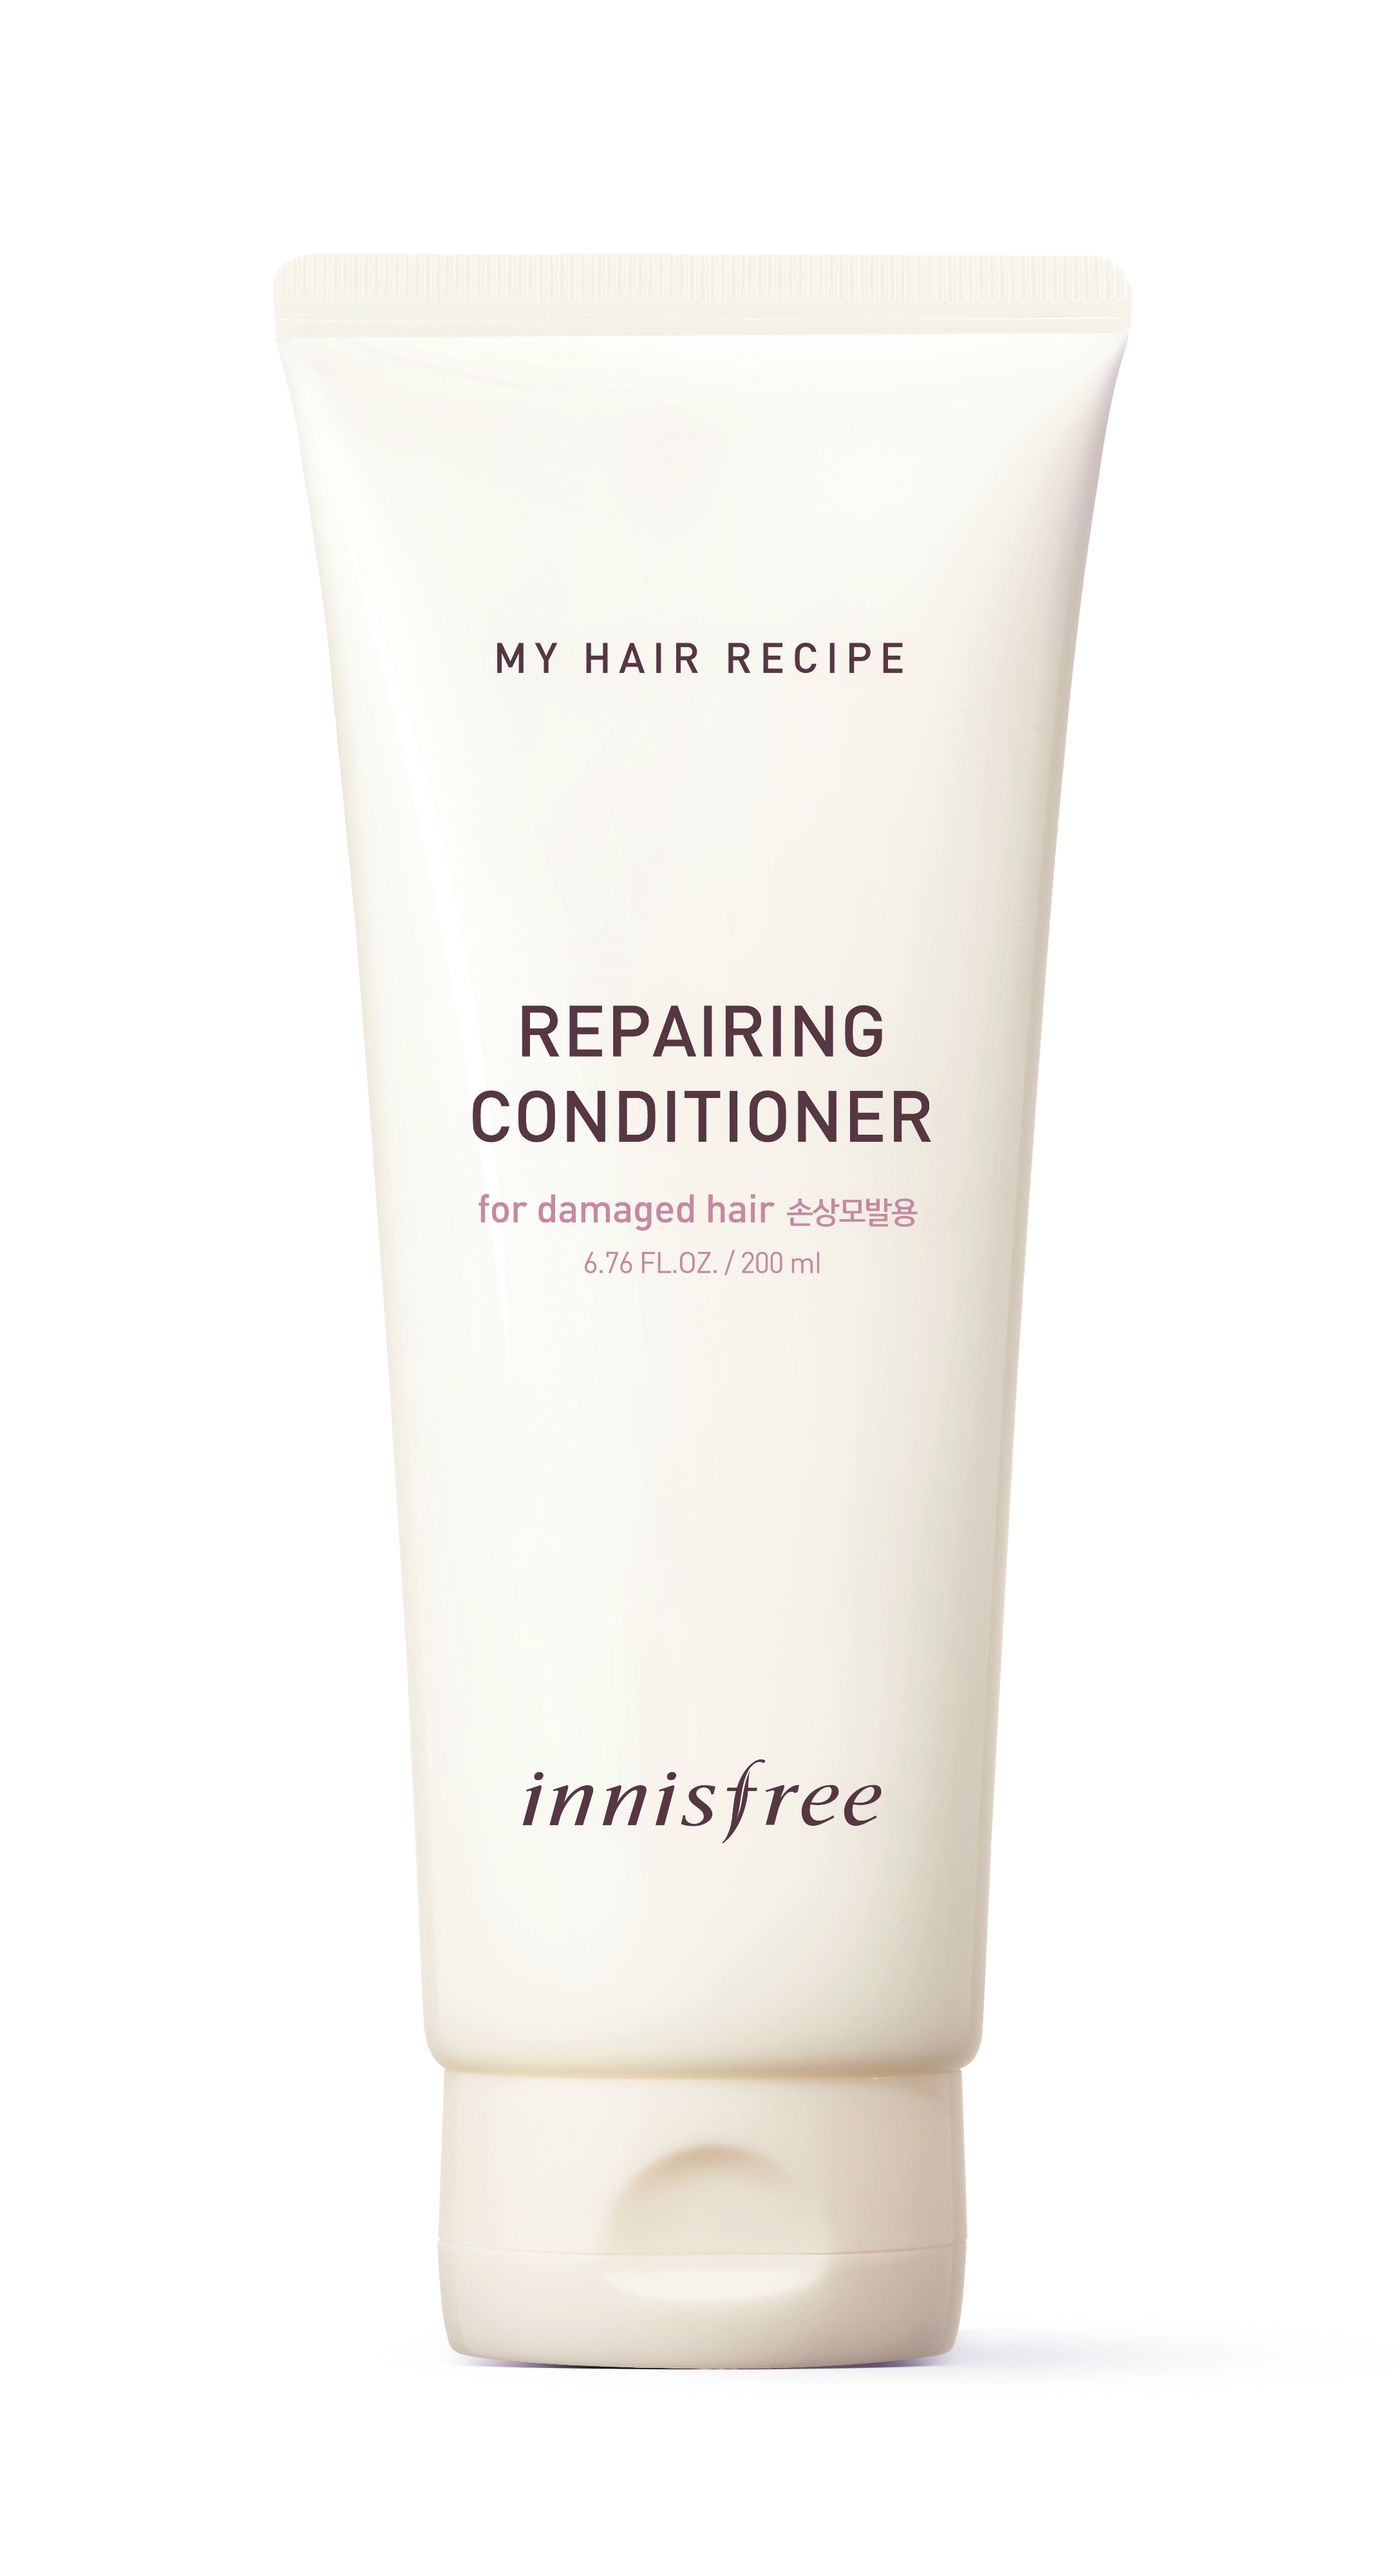 innisfree My Hair Recipe Repairing Conditioner (RM48.00/200ml)-Pamper.my